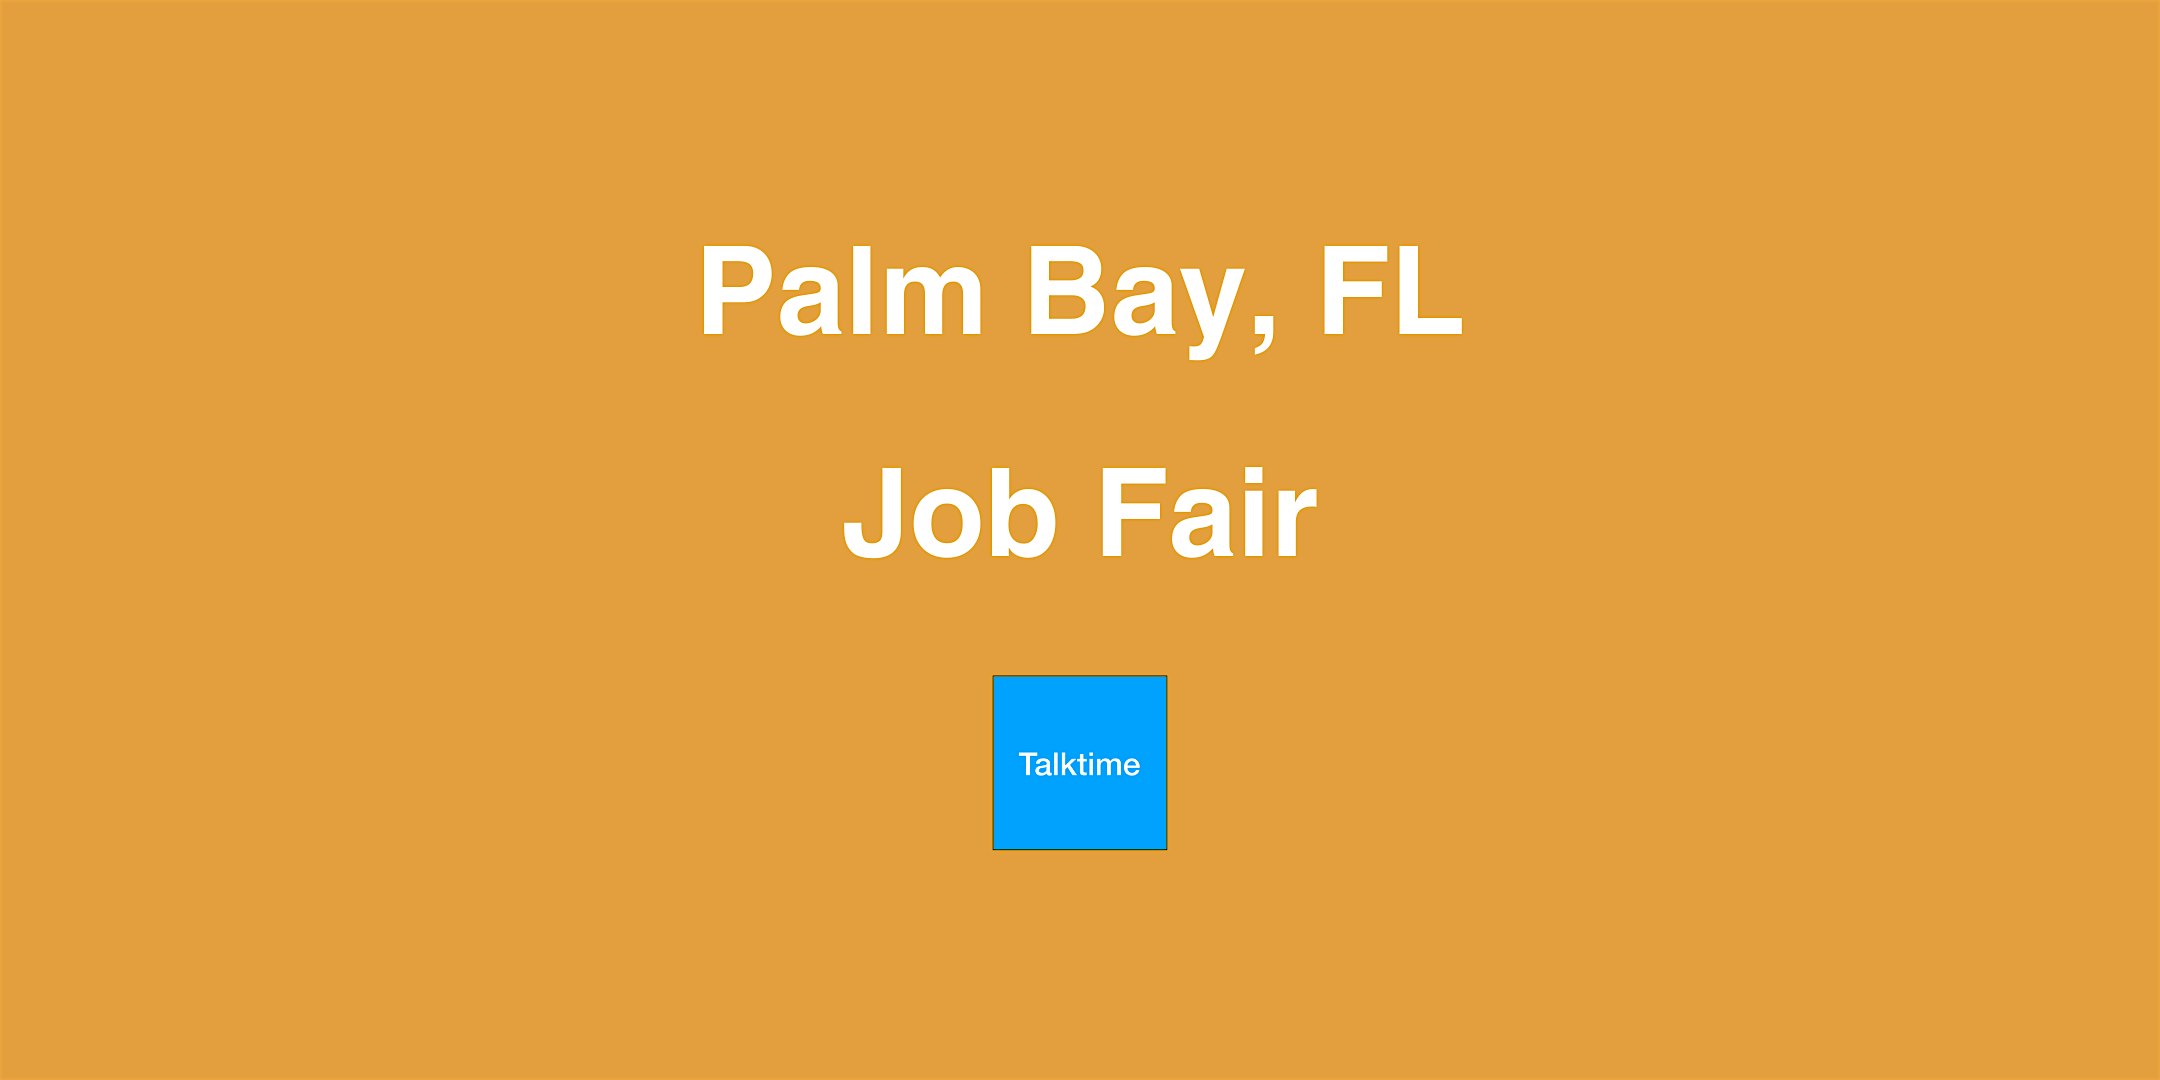 Job Fair - Palm Bay